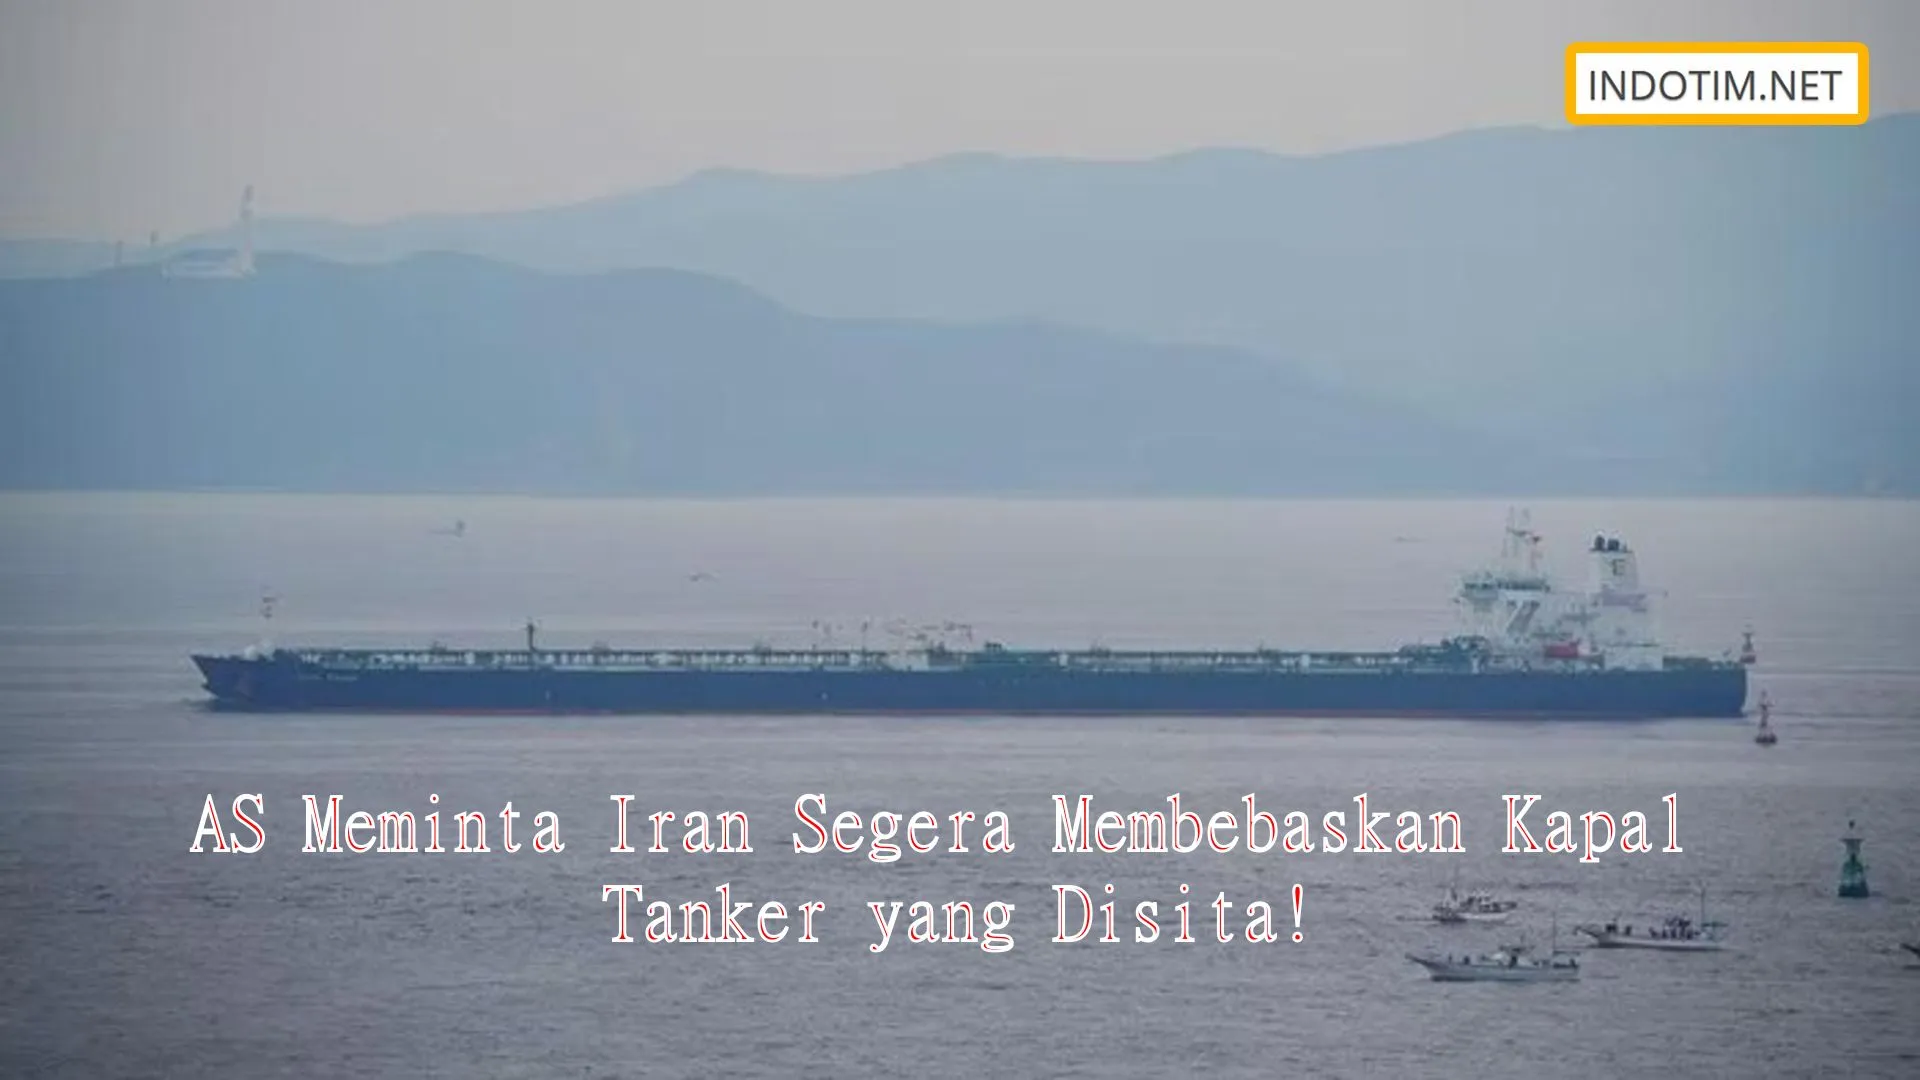 AS Meminta Iran Segera Membebaskan Kapal Tanker yang Disita!